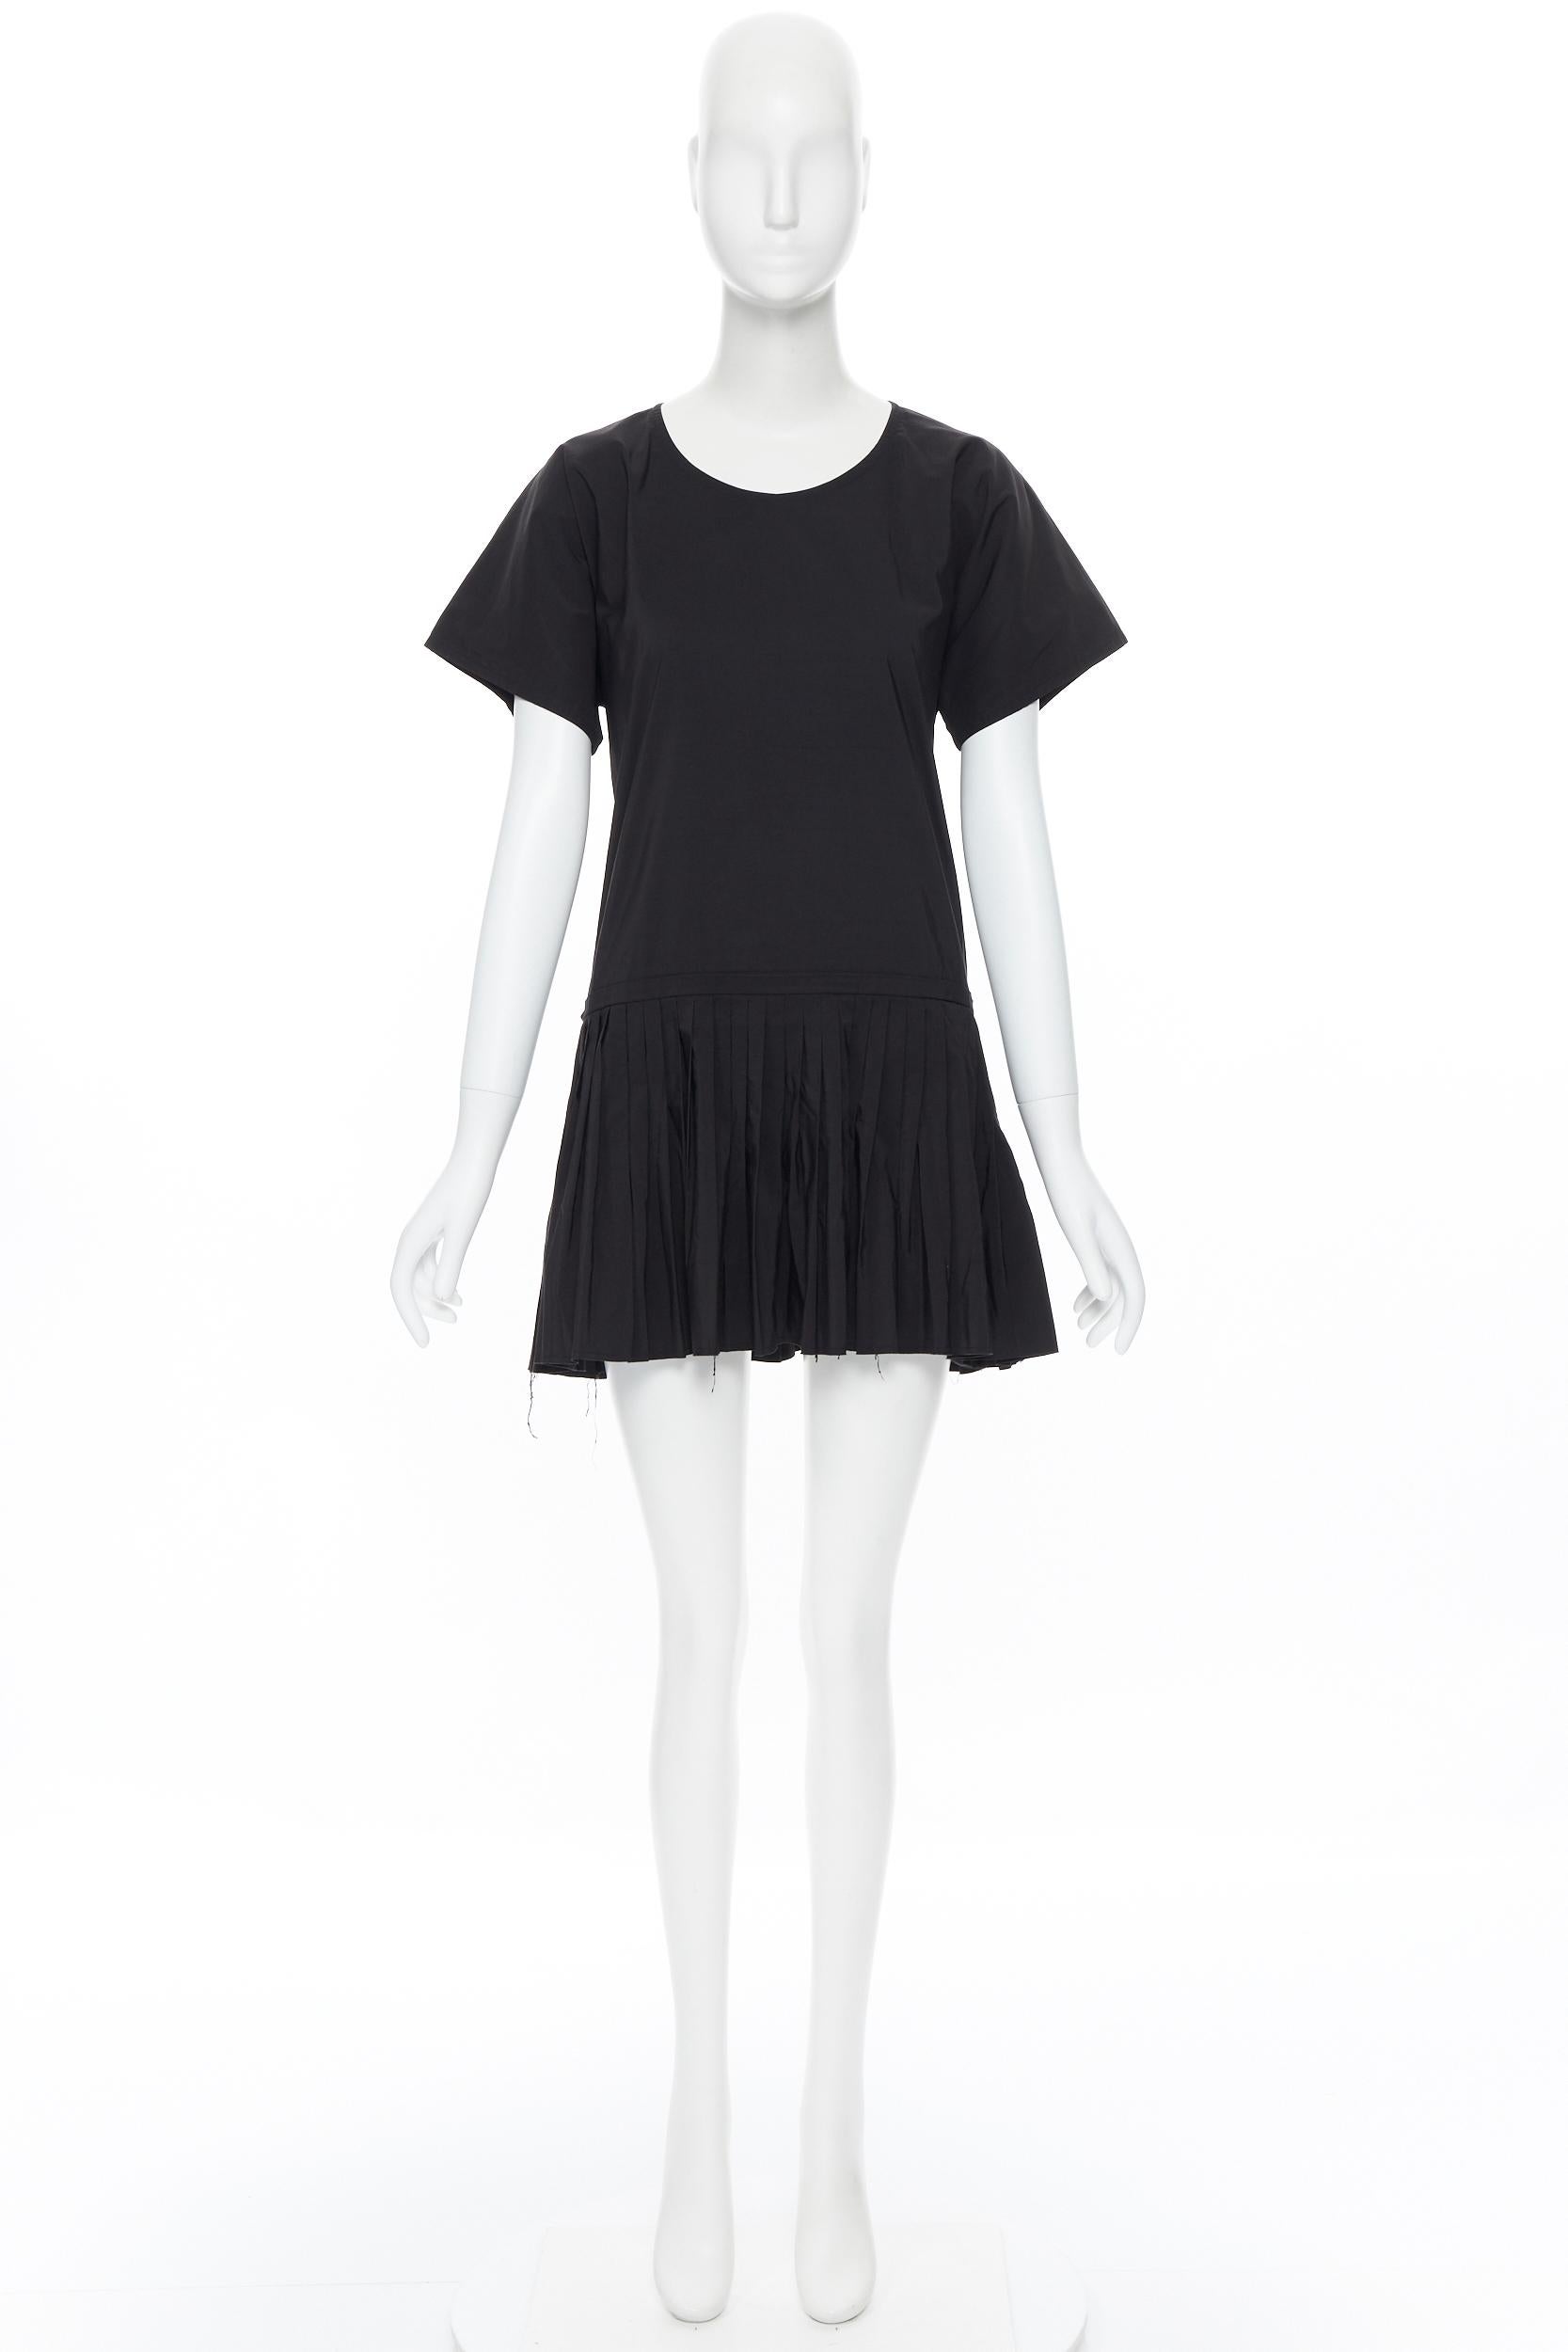 Black YVES SAINT LAURENT 2010 black pleated skirt side slit tunic dress EU39 / 15.5